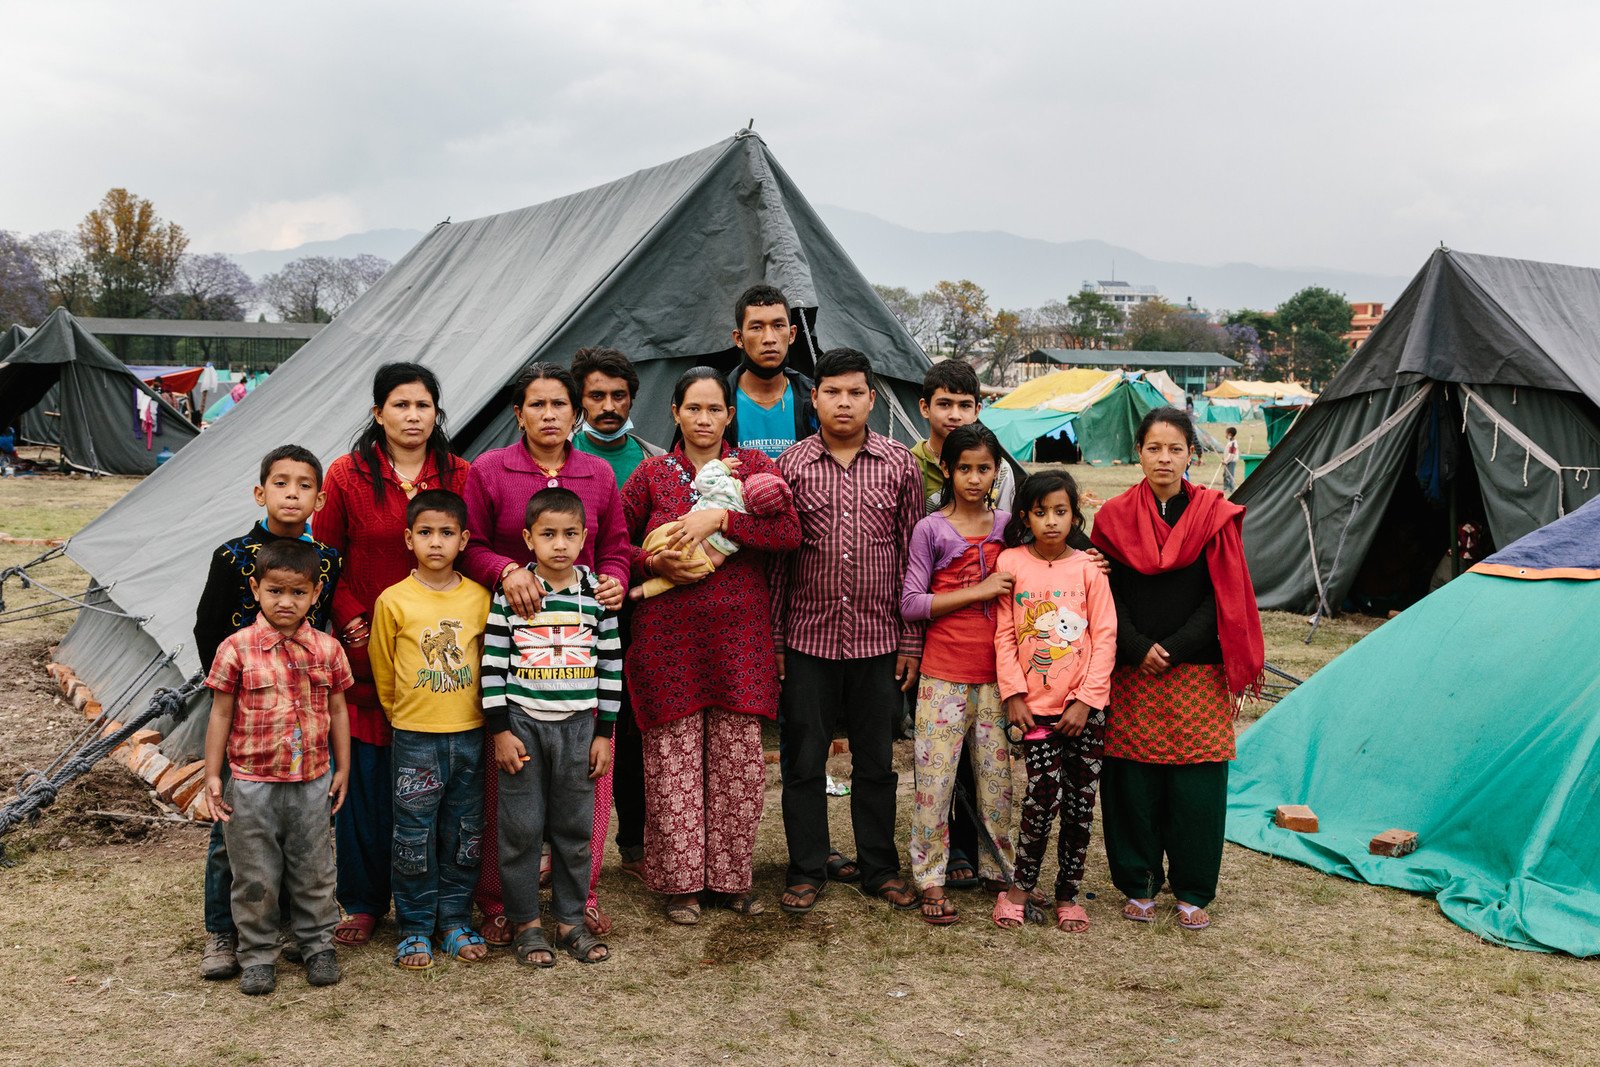 45日大的Hari在地震中逃過一劫，現時一家十五口一同住在帳蓬，在臨時安置點生活上仍困難重重。樂施會正在該臨時安置點搭建衛生設施。 (攝影: Aubrey Wade / Oxfam)